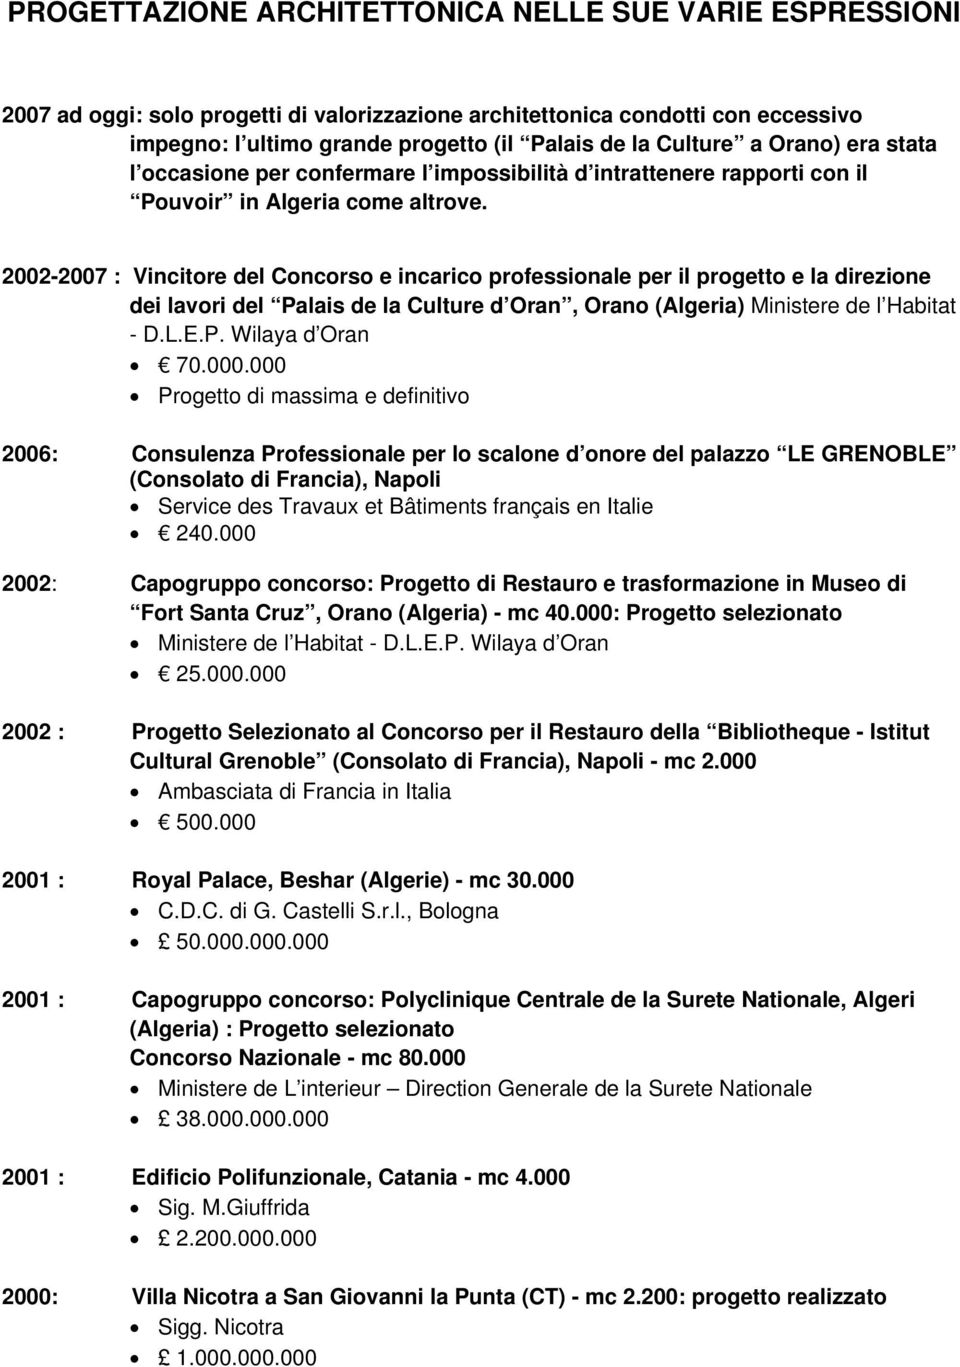 2002-2007 : Vincitore del Concorso e incarico professionale per il progetto e la direzione dei lavori del Palais de la Culture d Oran, Orano (Algeria) Ministere de l Habitat - D.L.E.P. Wilaya d Oran 70.